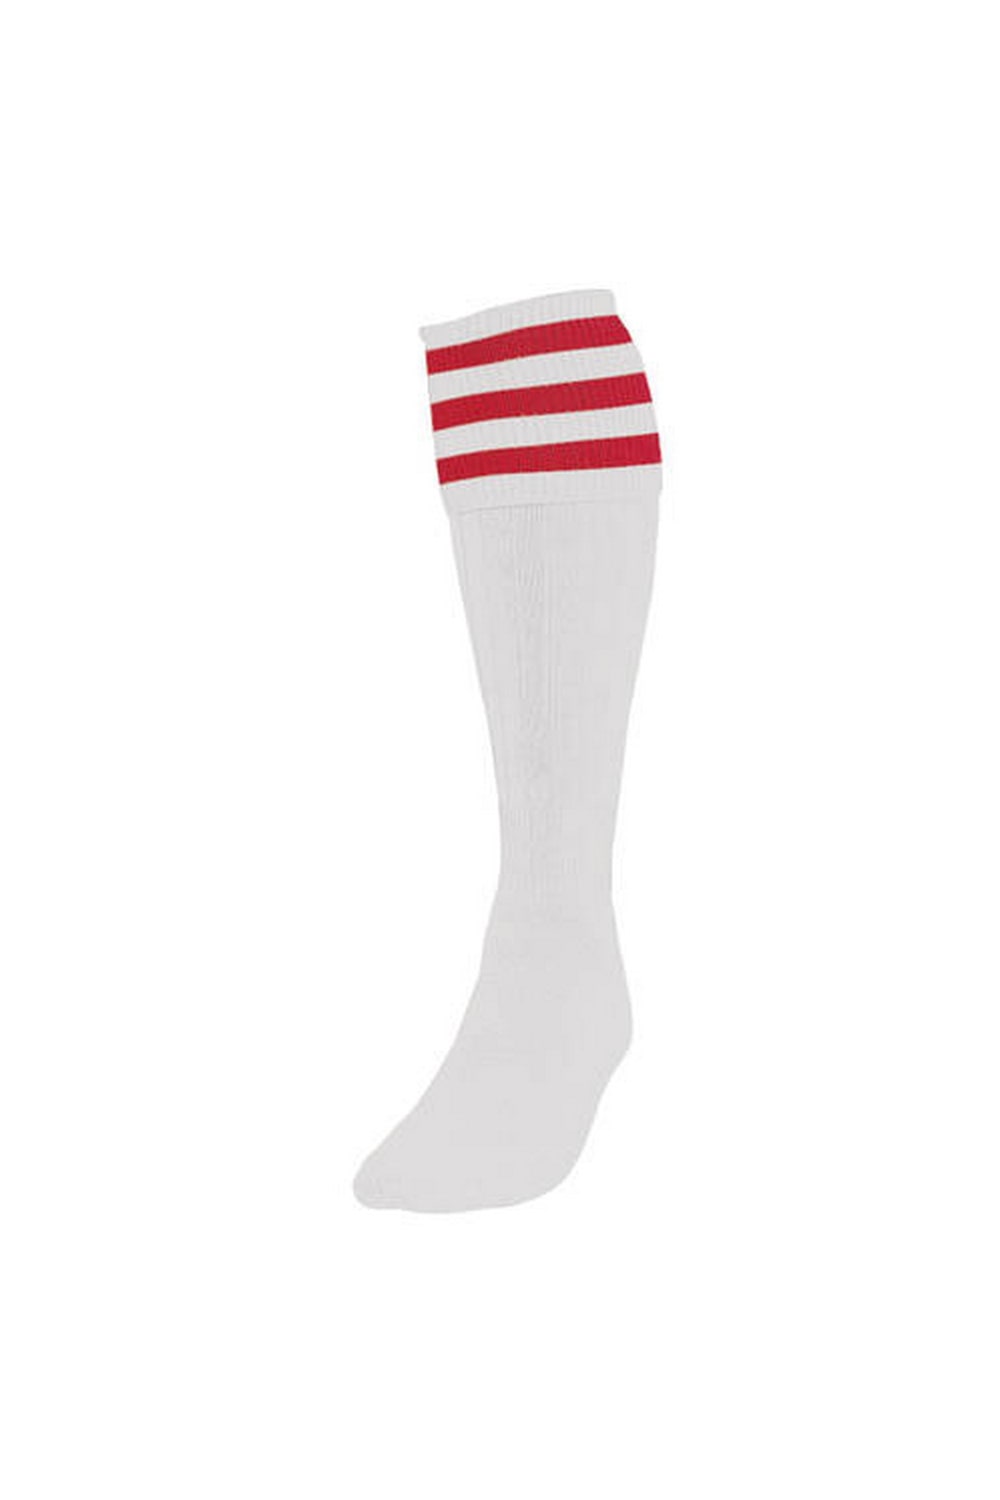 Childrens/Kids Football Socks (White/Red)